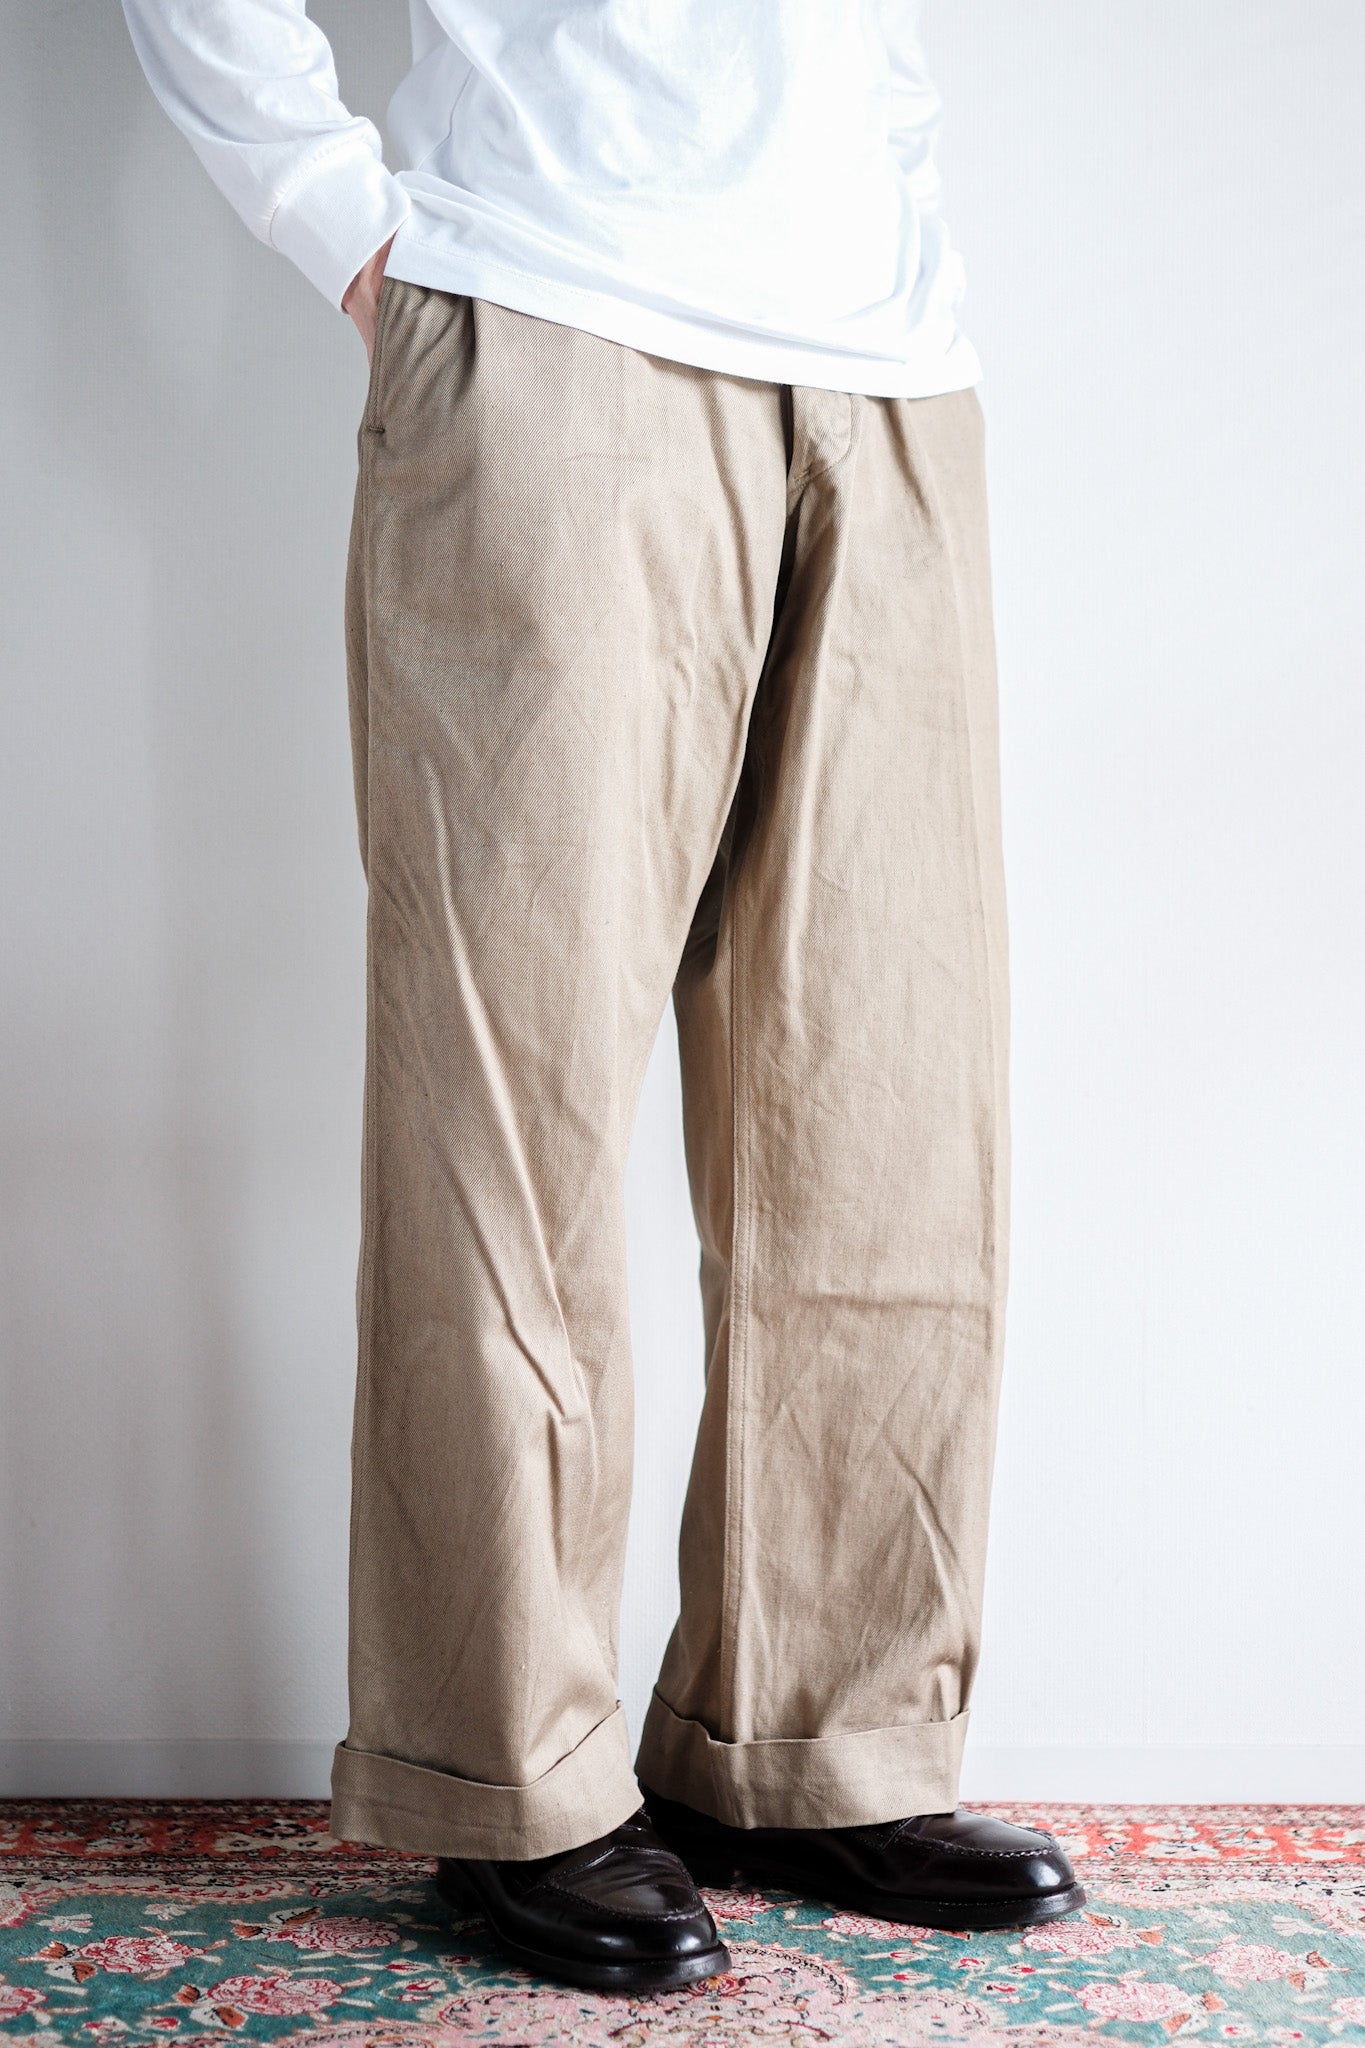 [~ 60's] Taille des pantalons chino de l'armée française M52.22 "Stock mort"